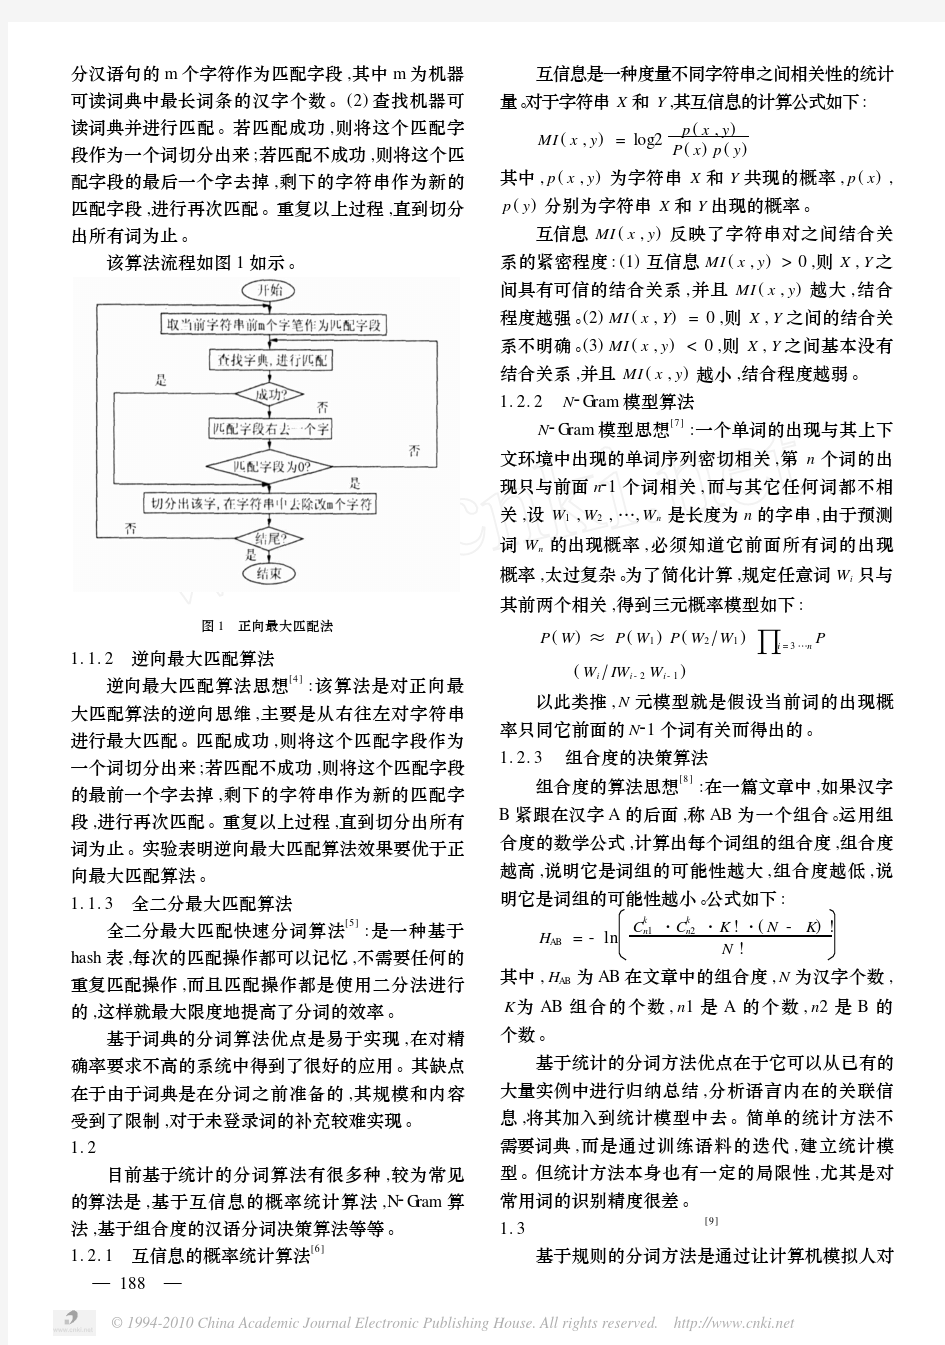 中文分词技术的研究现状与困难